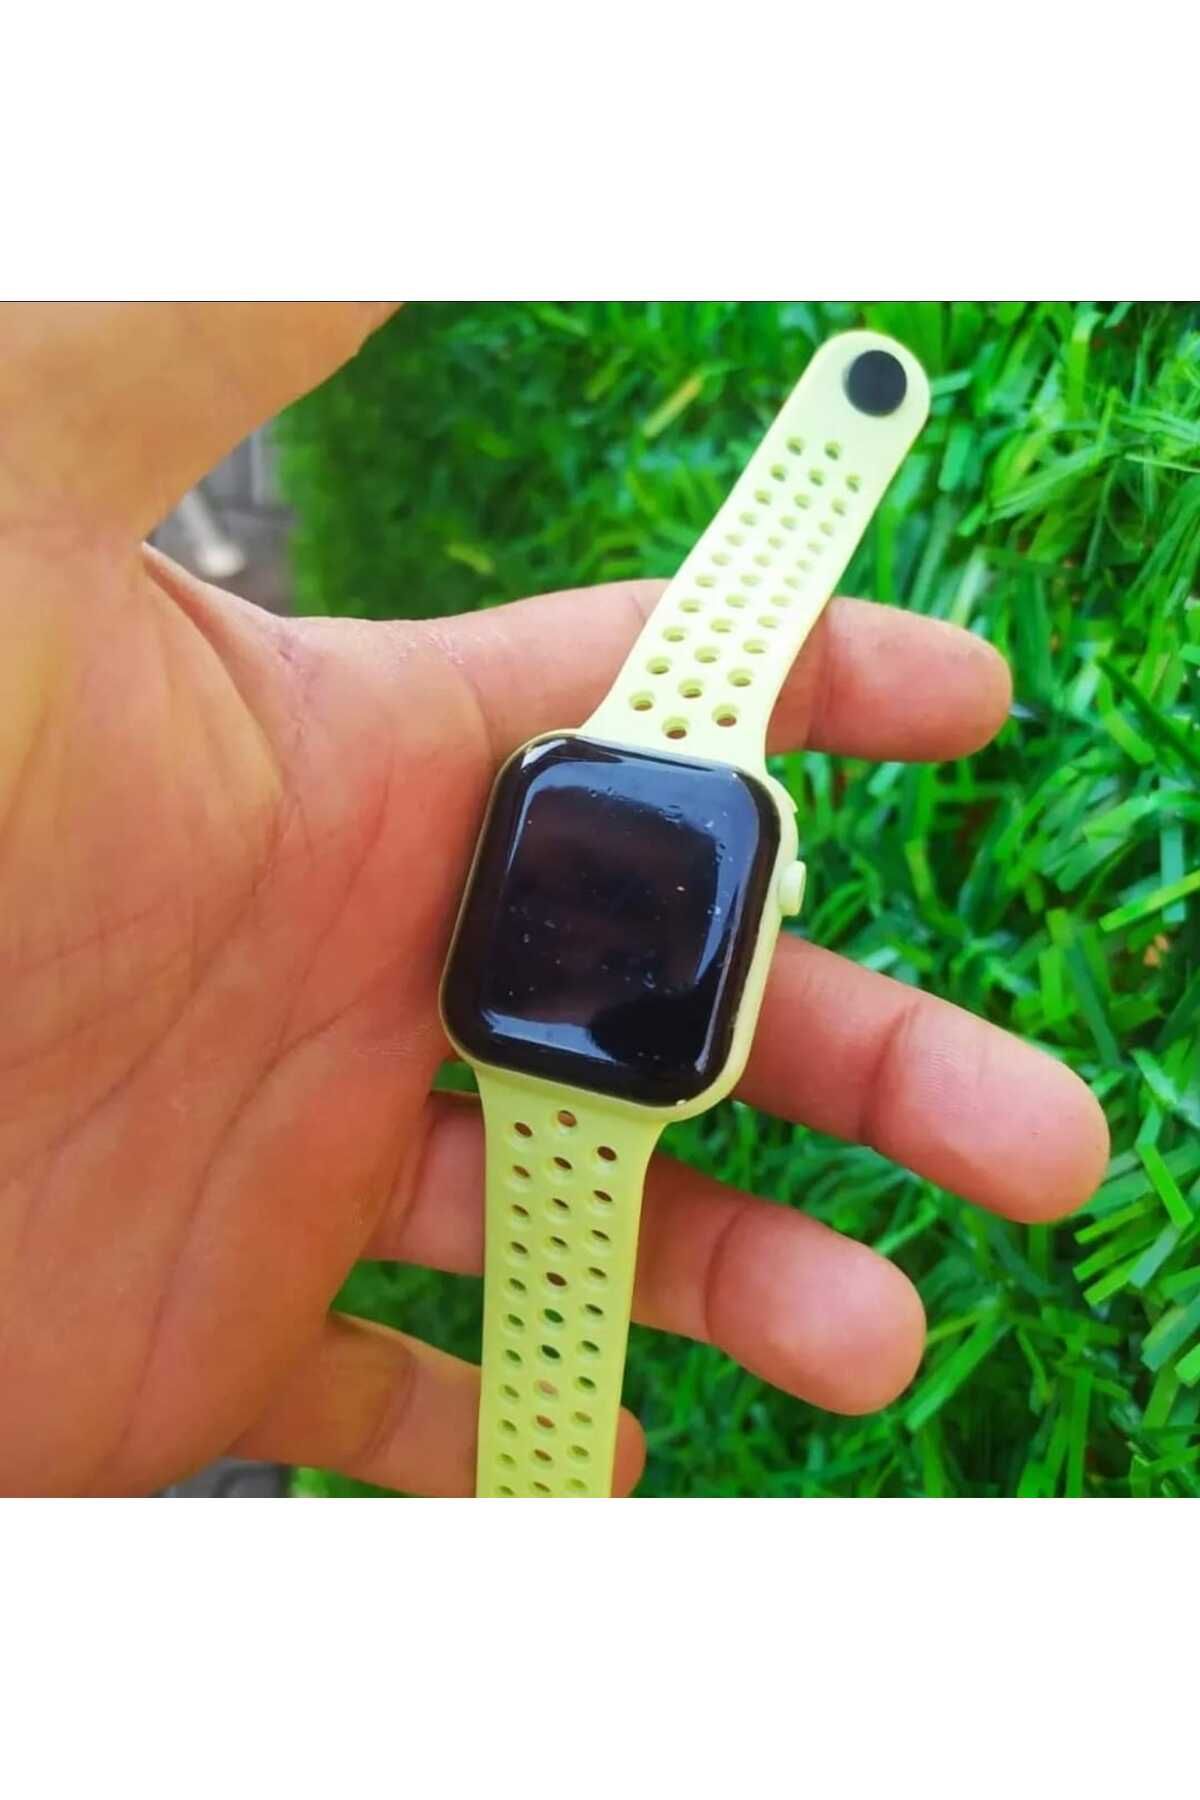 G-Sport POLO Su Geçirmez Apple Watch Saat (AKILLI SAAT DEĞİLDİR)